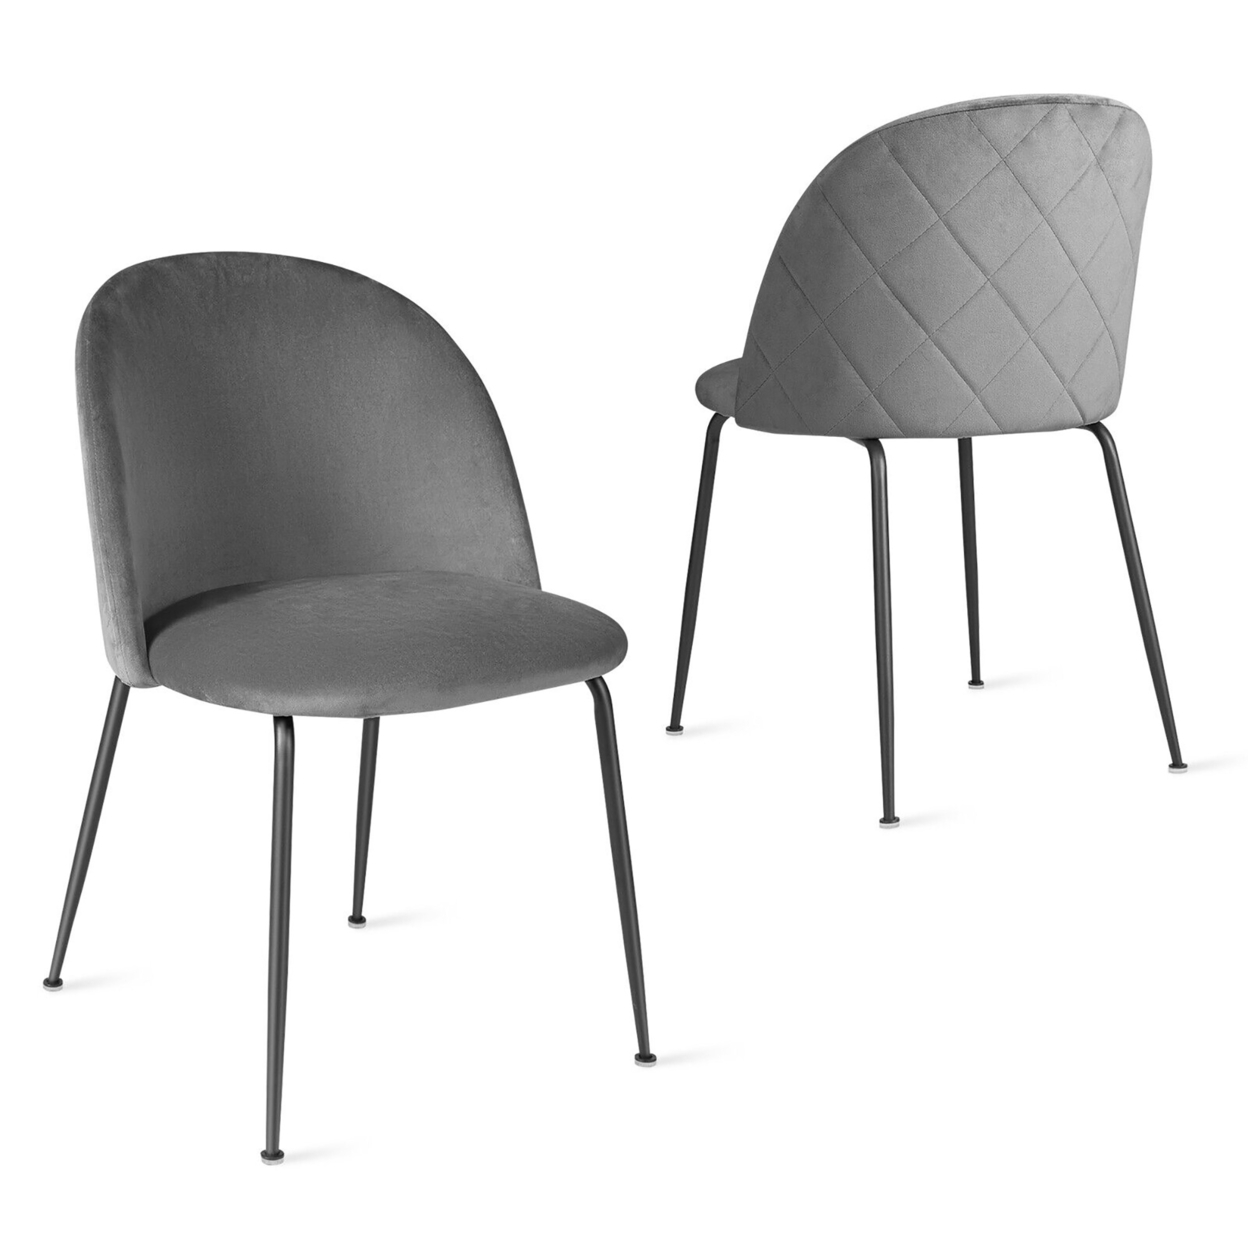 Dining Chair Set Of 2 Upholstered Velvet Chair Set W/ Metal Base For Living Room - Grey